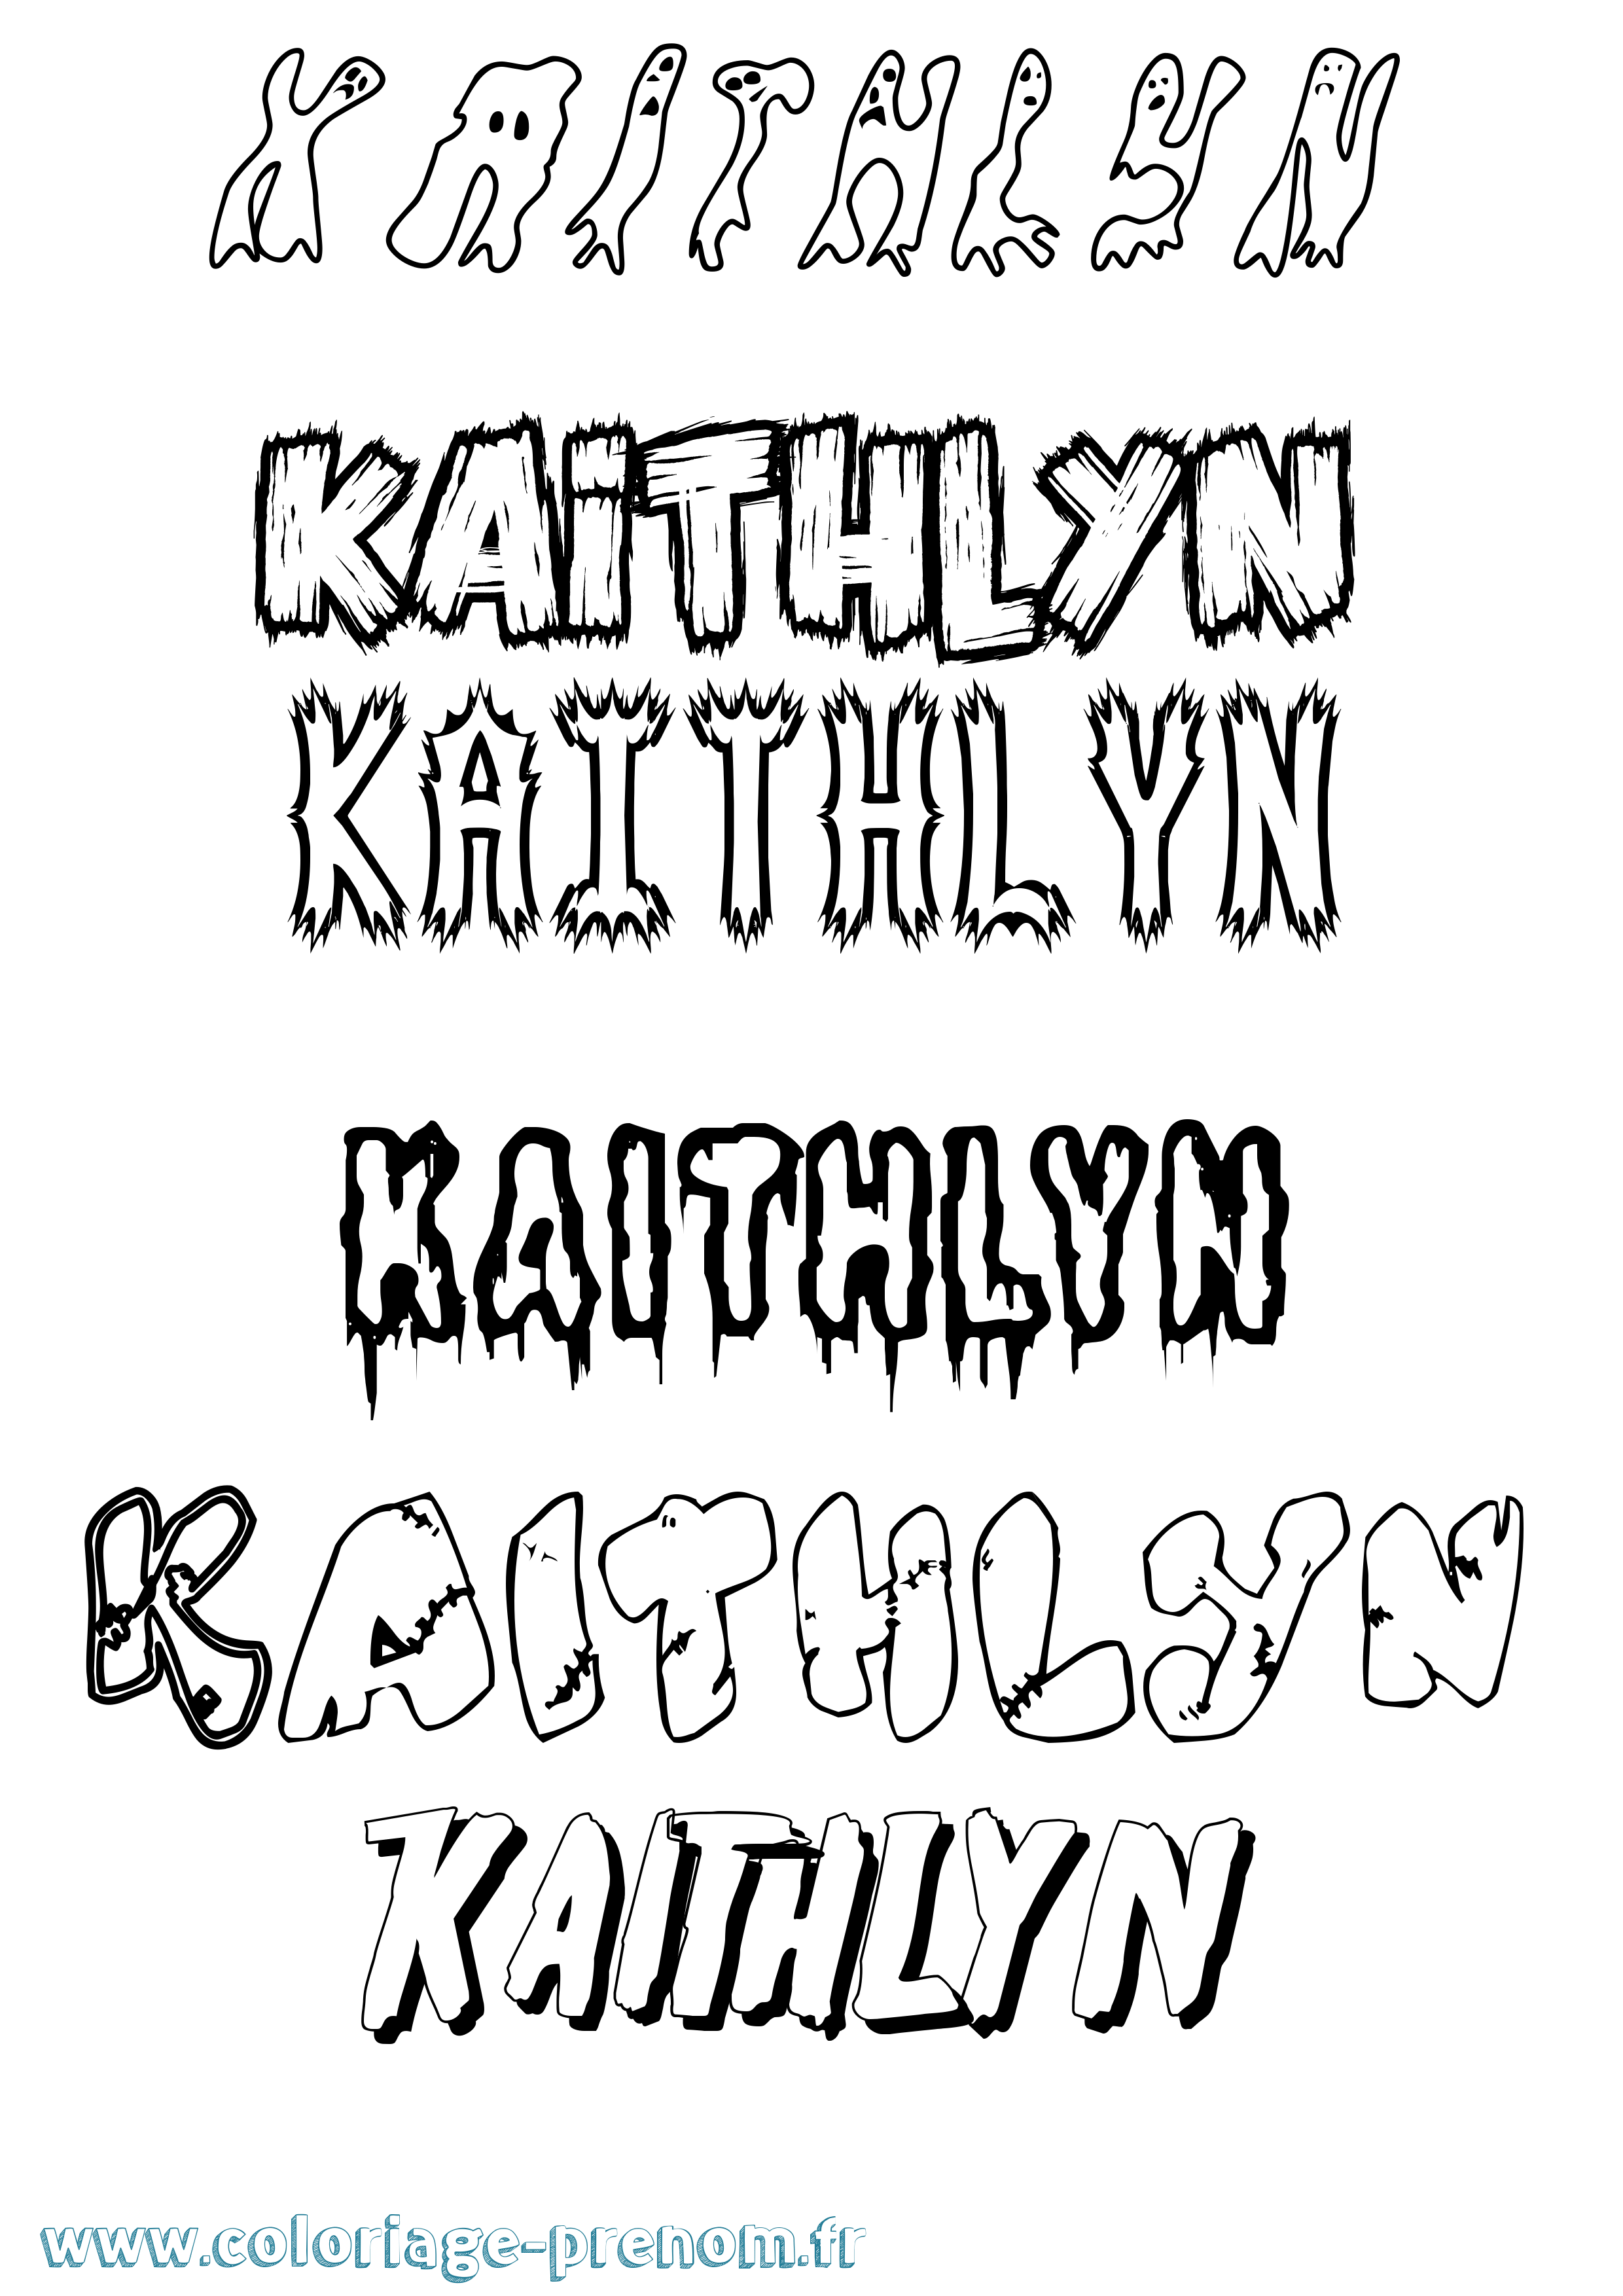 Coloriage prénom Kaithlyn Frisson